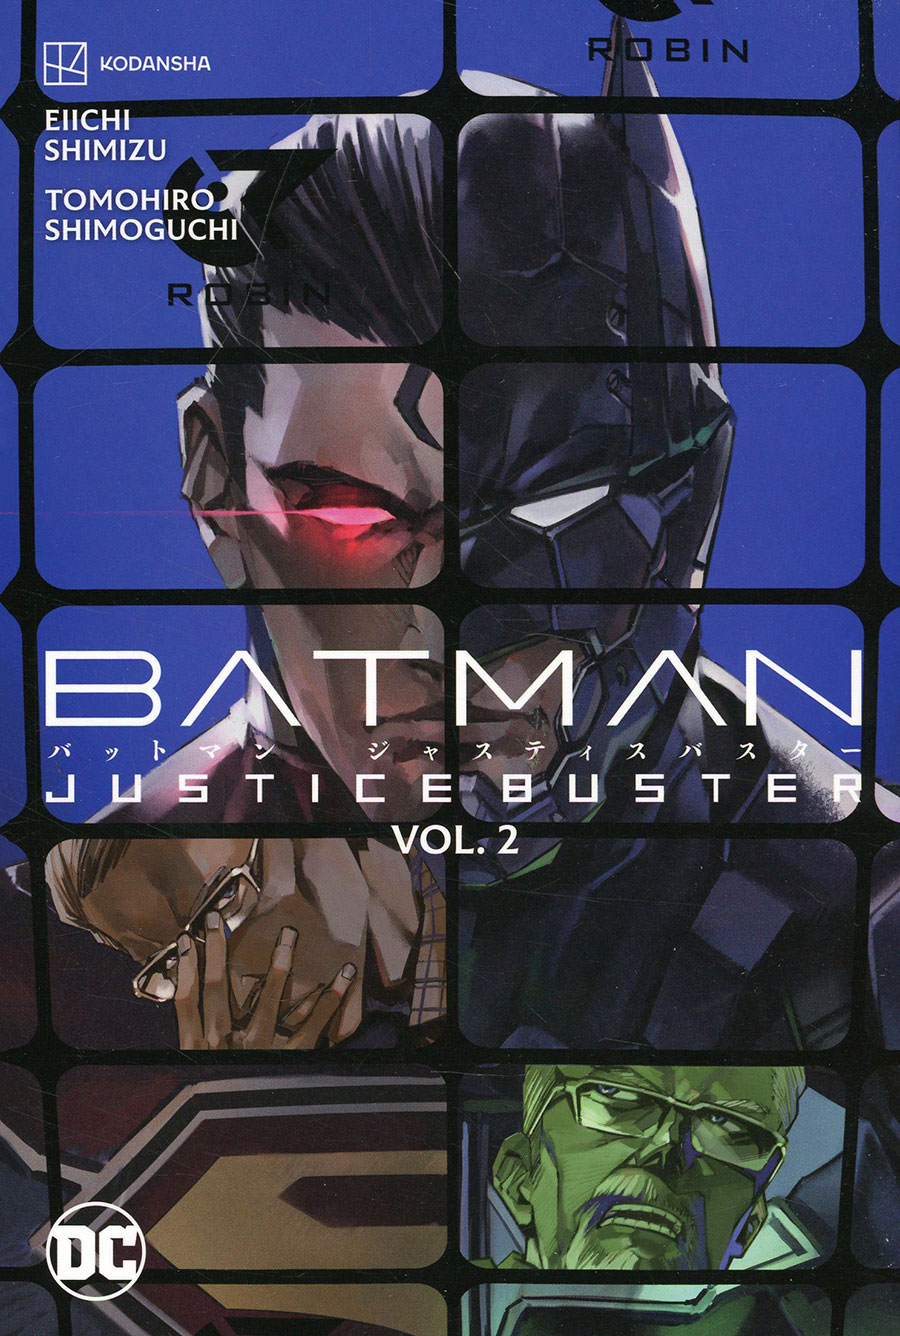 Batman Justice Buster Vol 2 TP